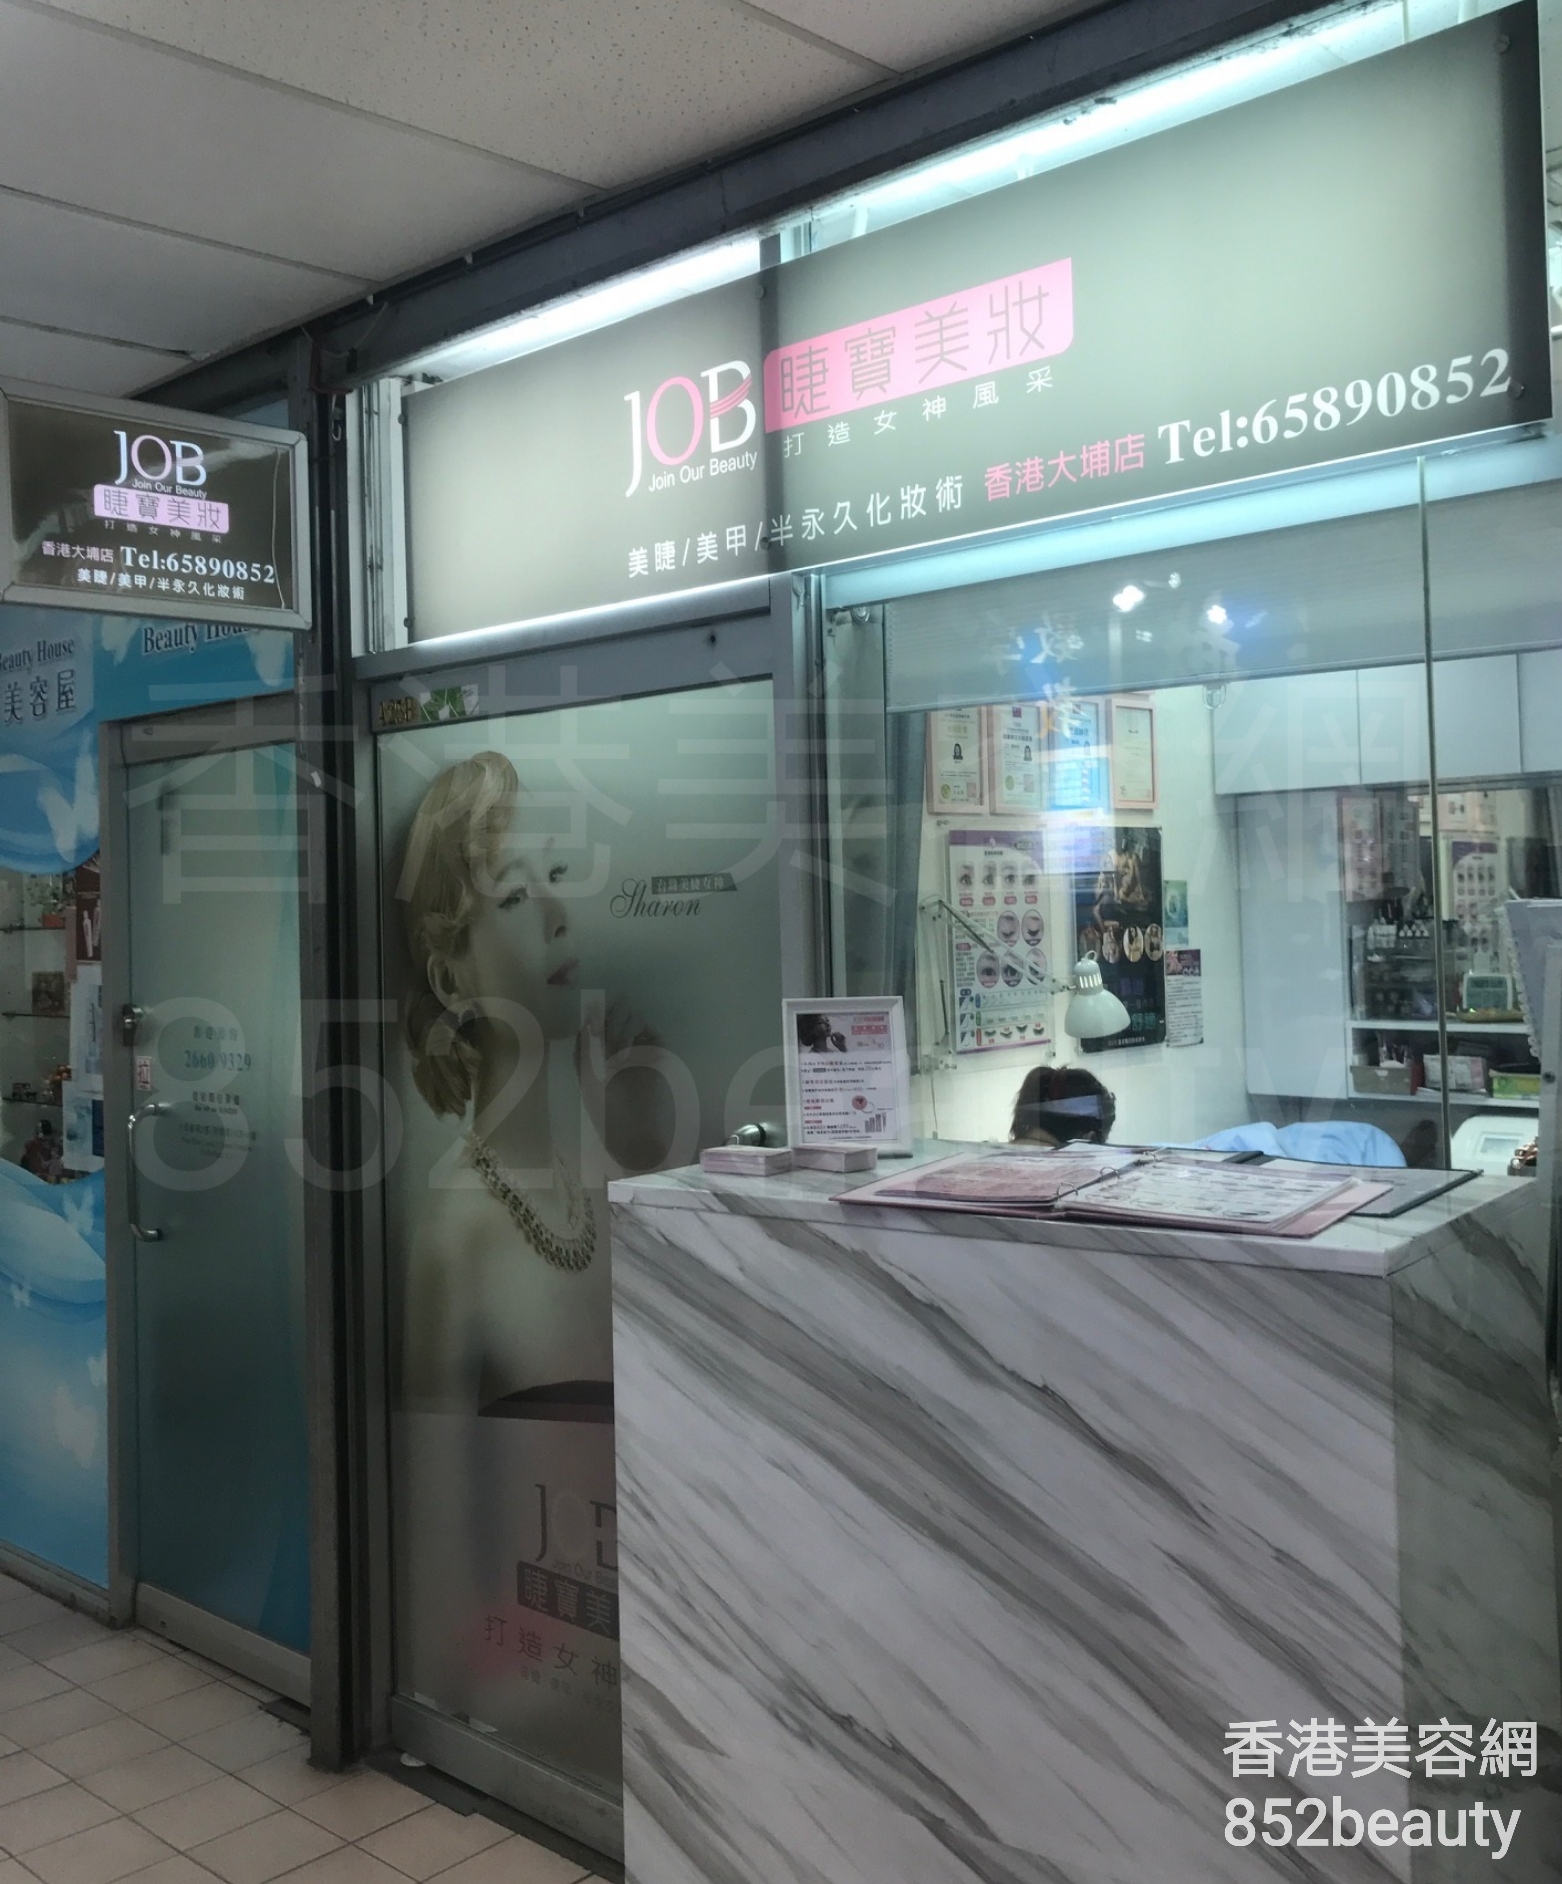 香港美容網 Hong Kong Beauty Salon 美容院 / 美容師: JOB 睫寶美妝